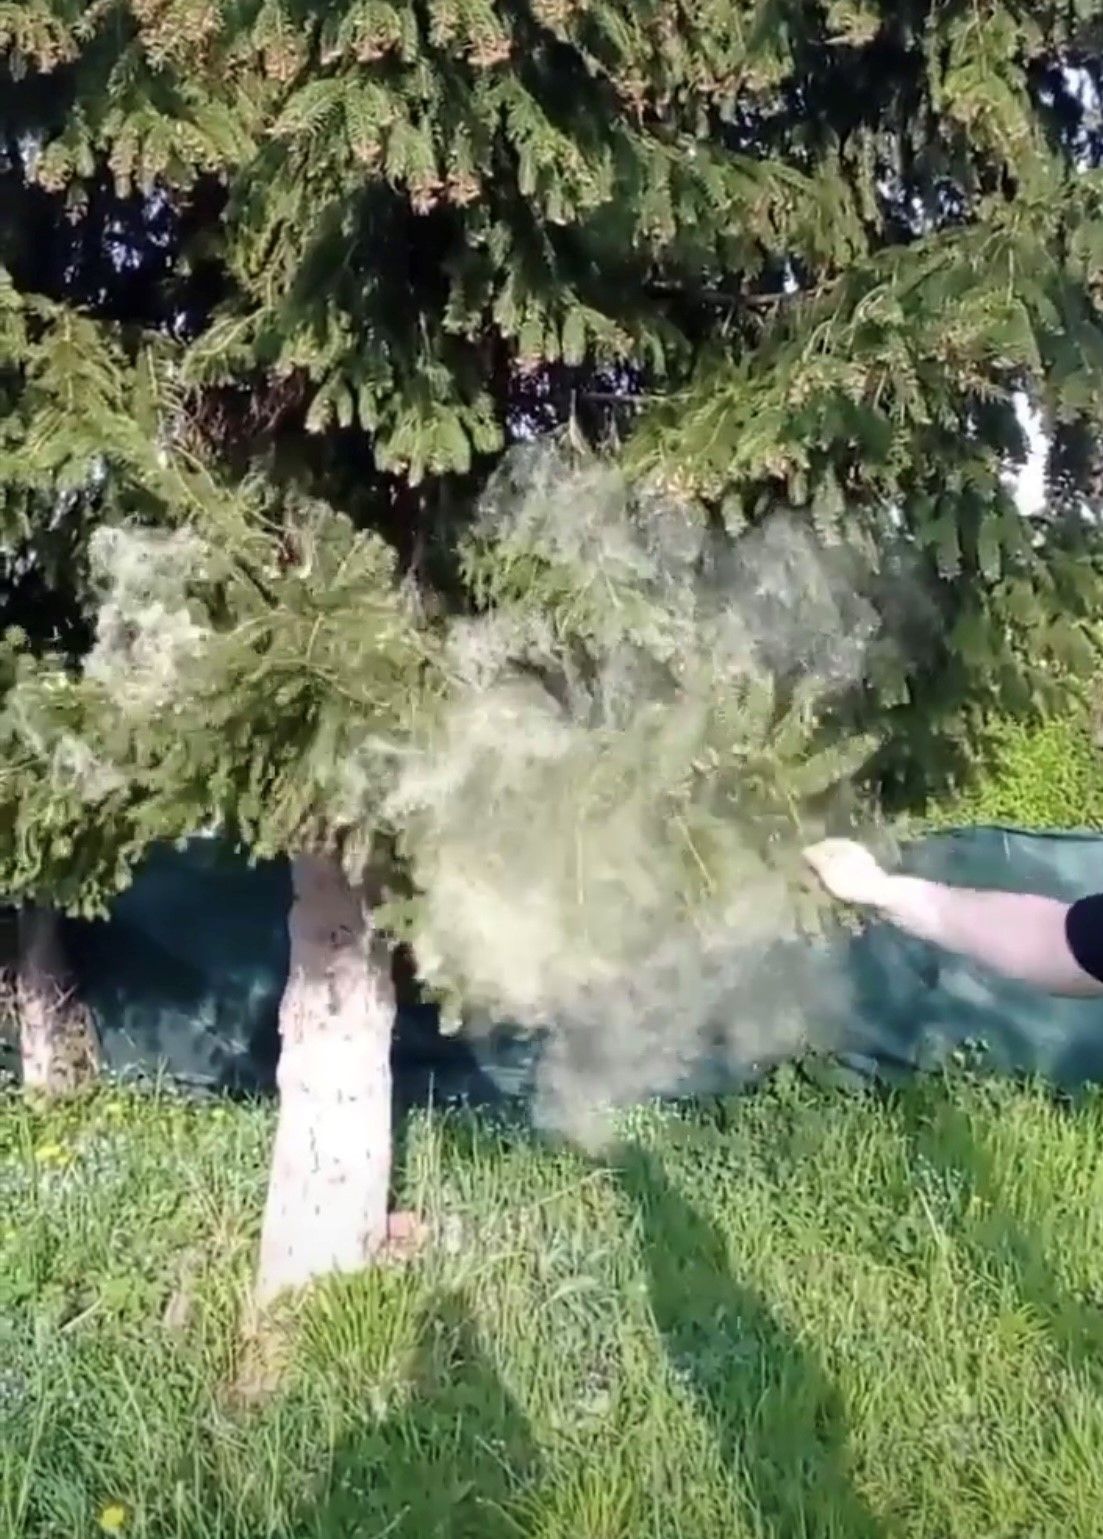 Takto opadal peľ zo smreku na záhrade foto Zuzana Hajdúchová.jpg